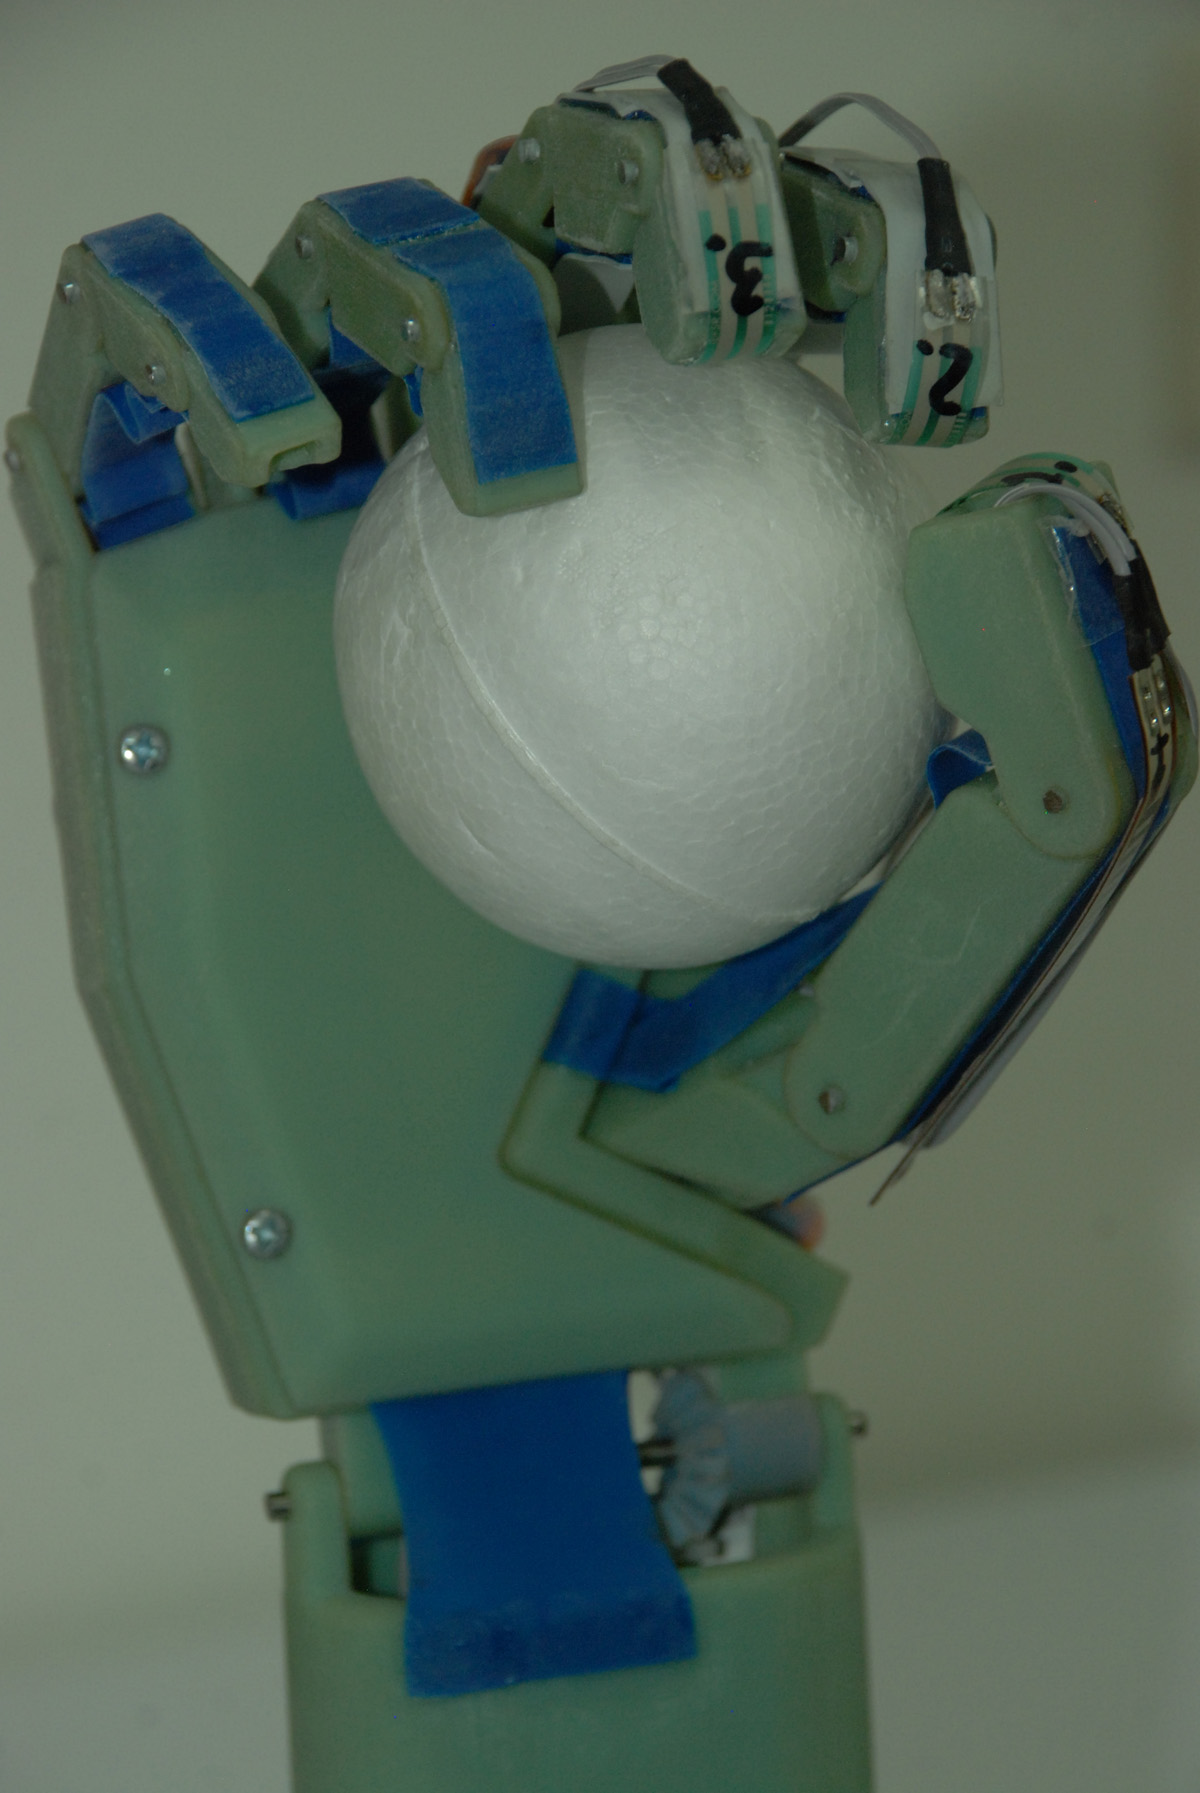 Prototipo de prótesis de mano con control de voz. (Foto: Andrés Almeida Guano).